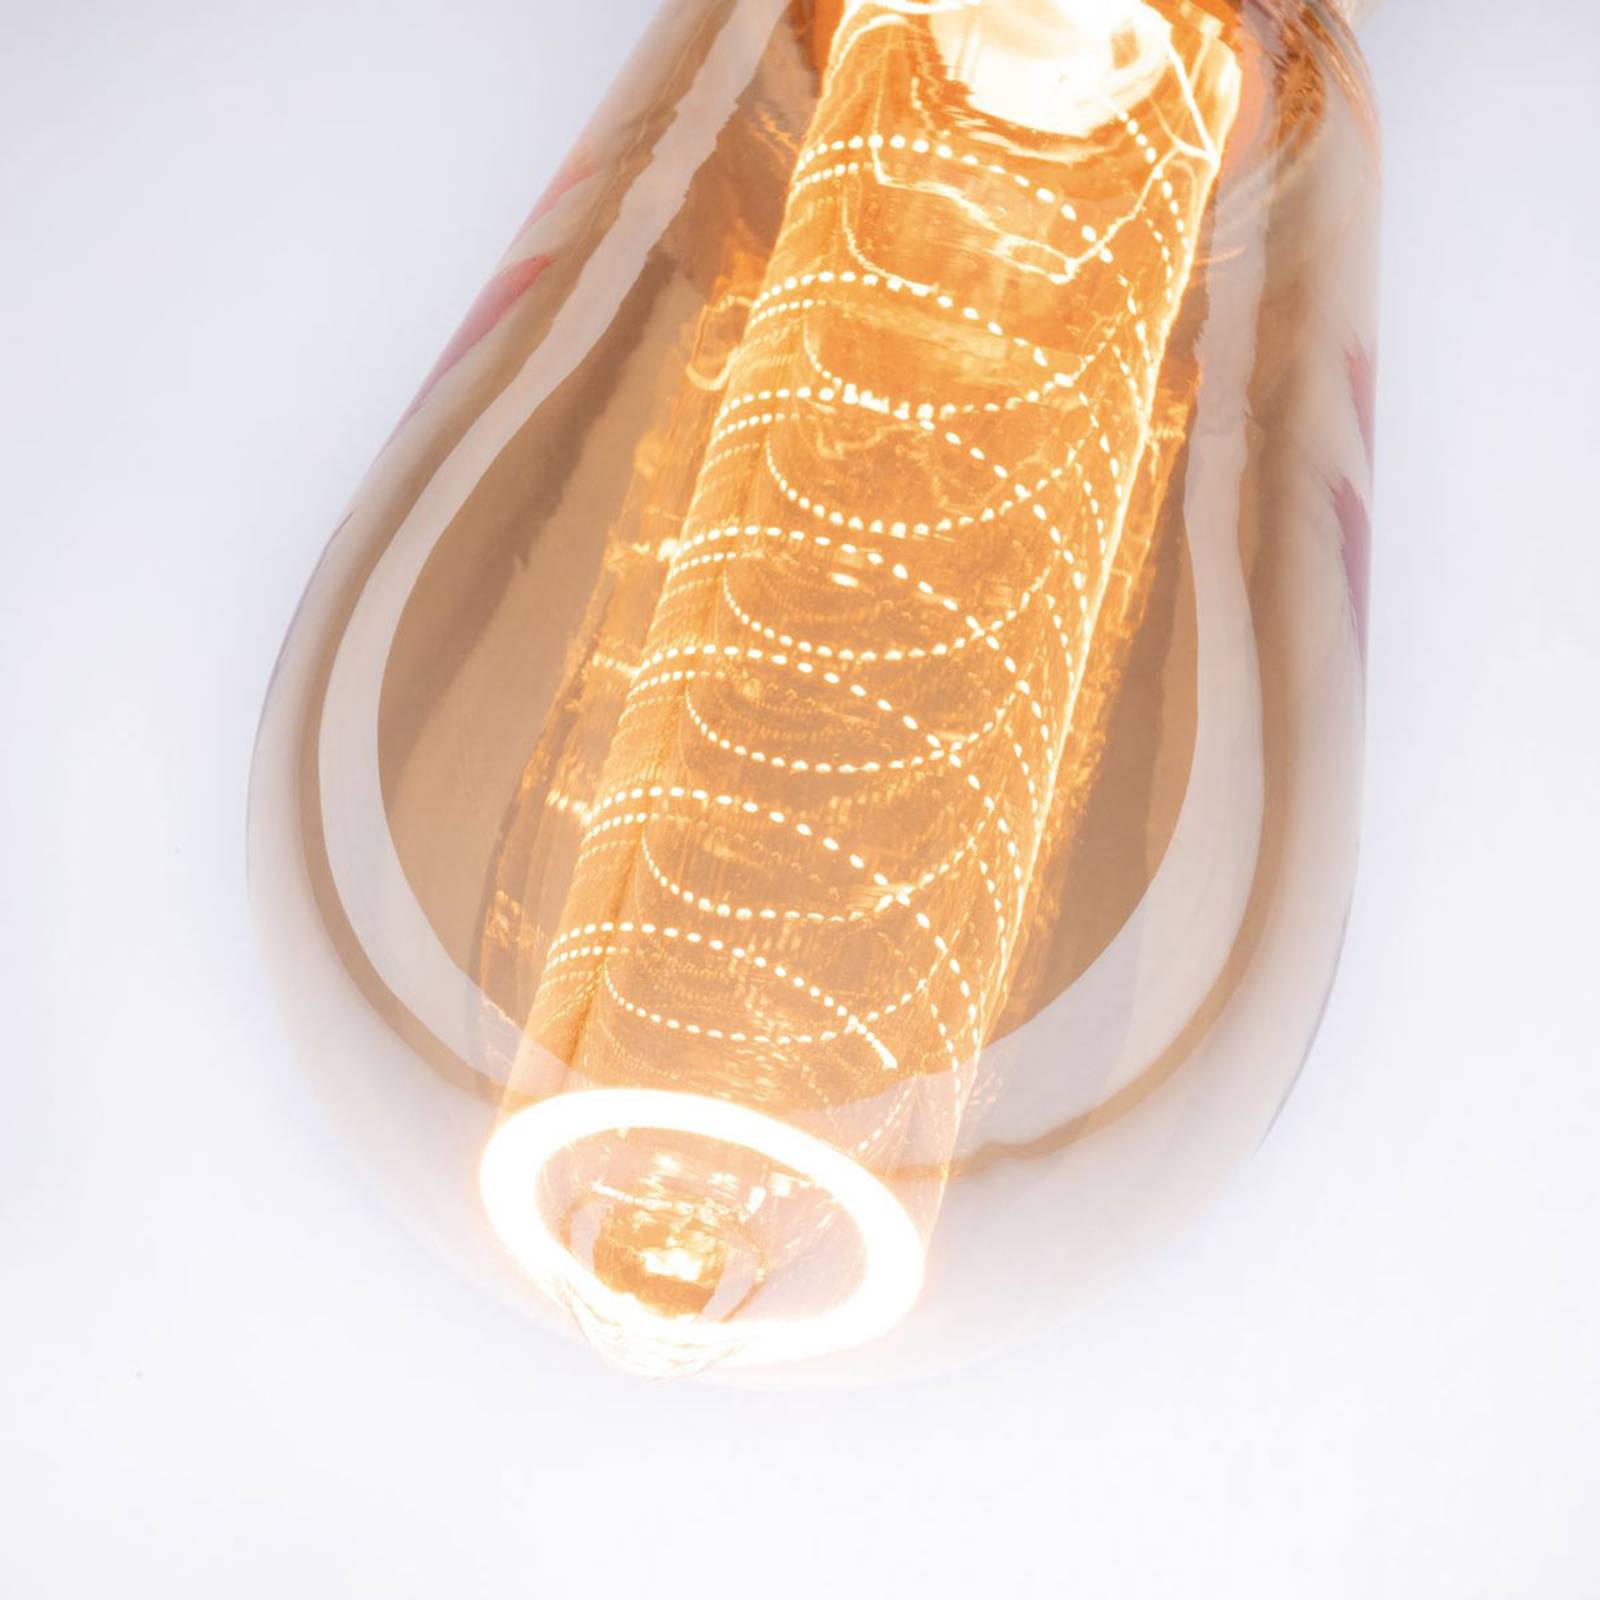 LED-lampe E27 ST64 4W Inner Glow spiralformet mønster